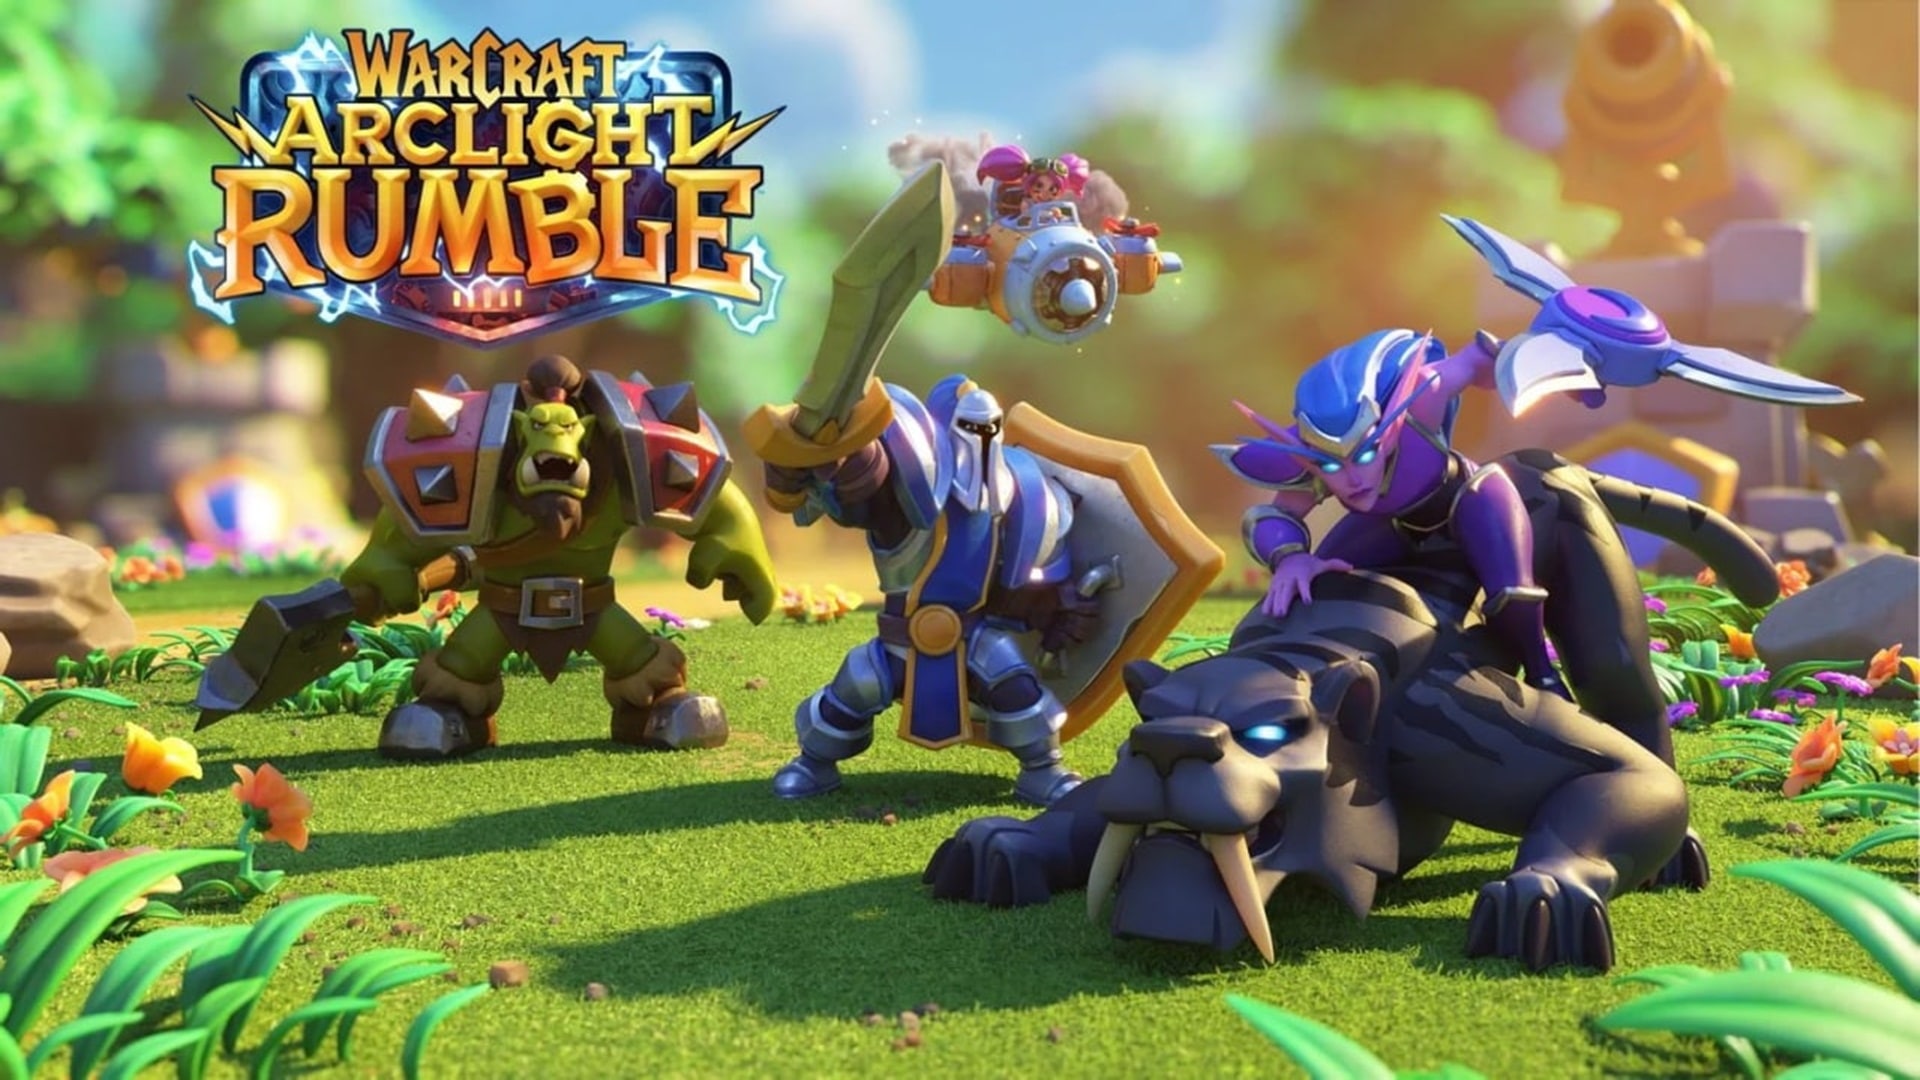 Blizzard anuncia el nuevo juego móvil Warcraft Arclight Rumble, GamersRD